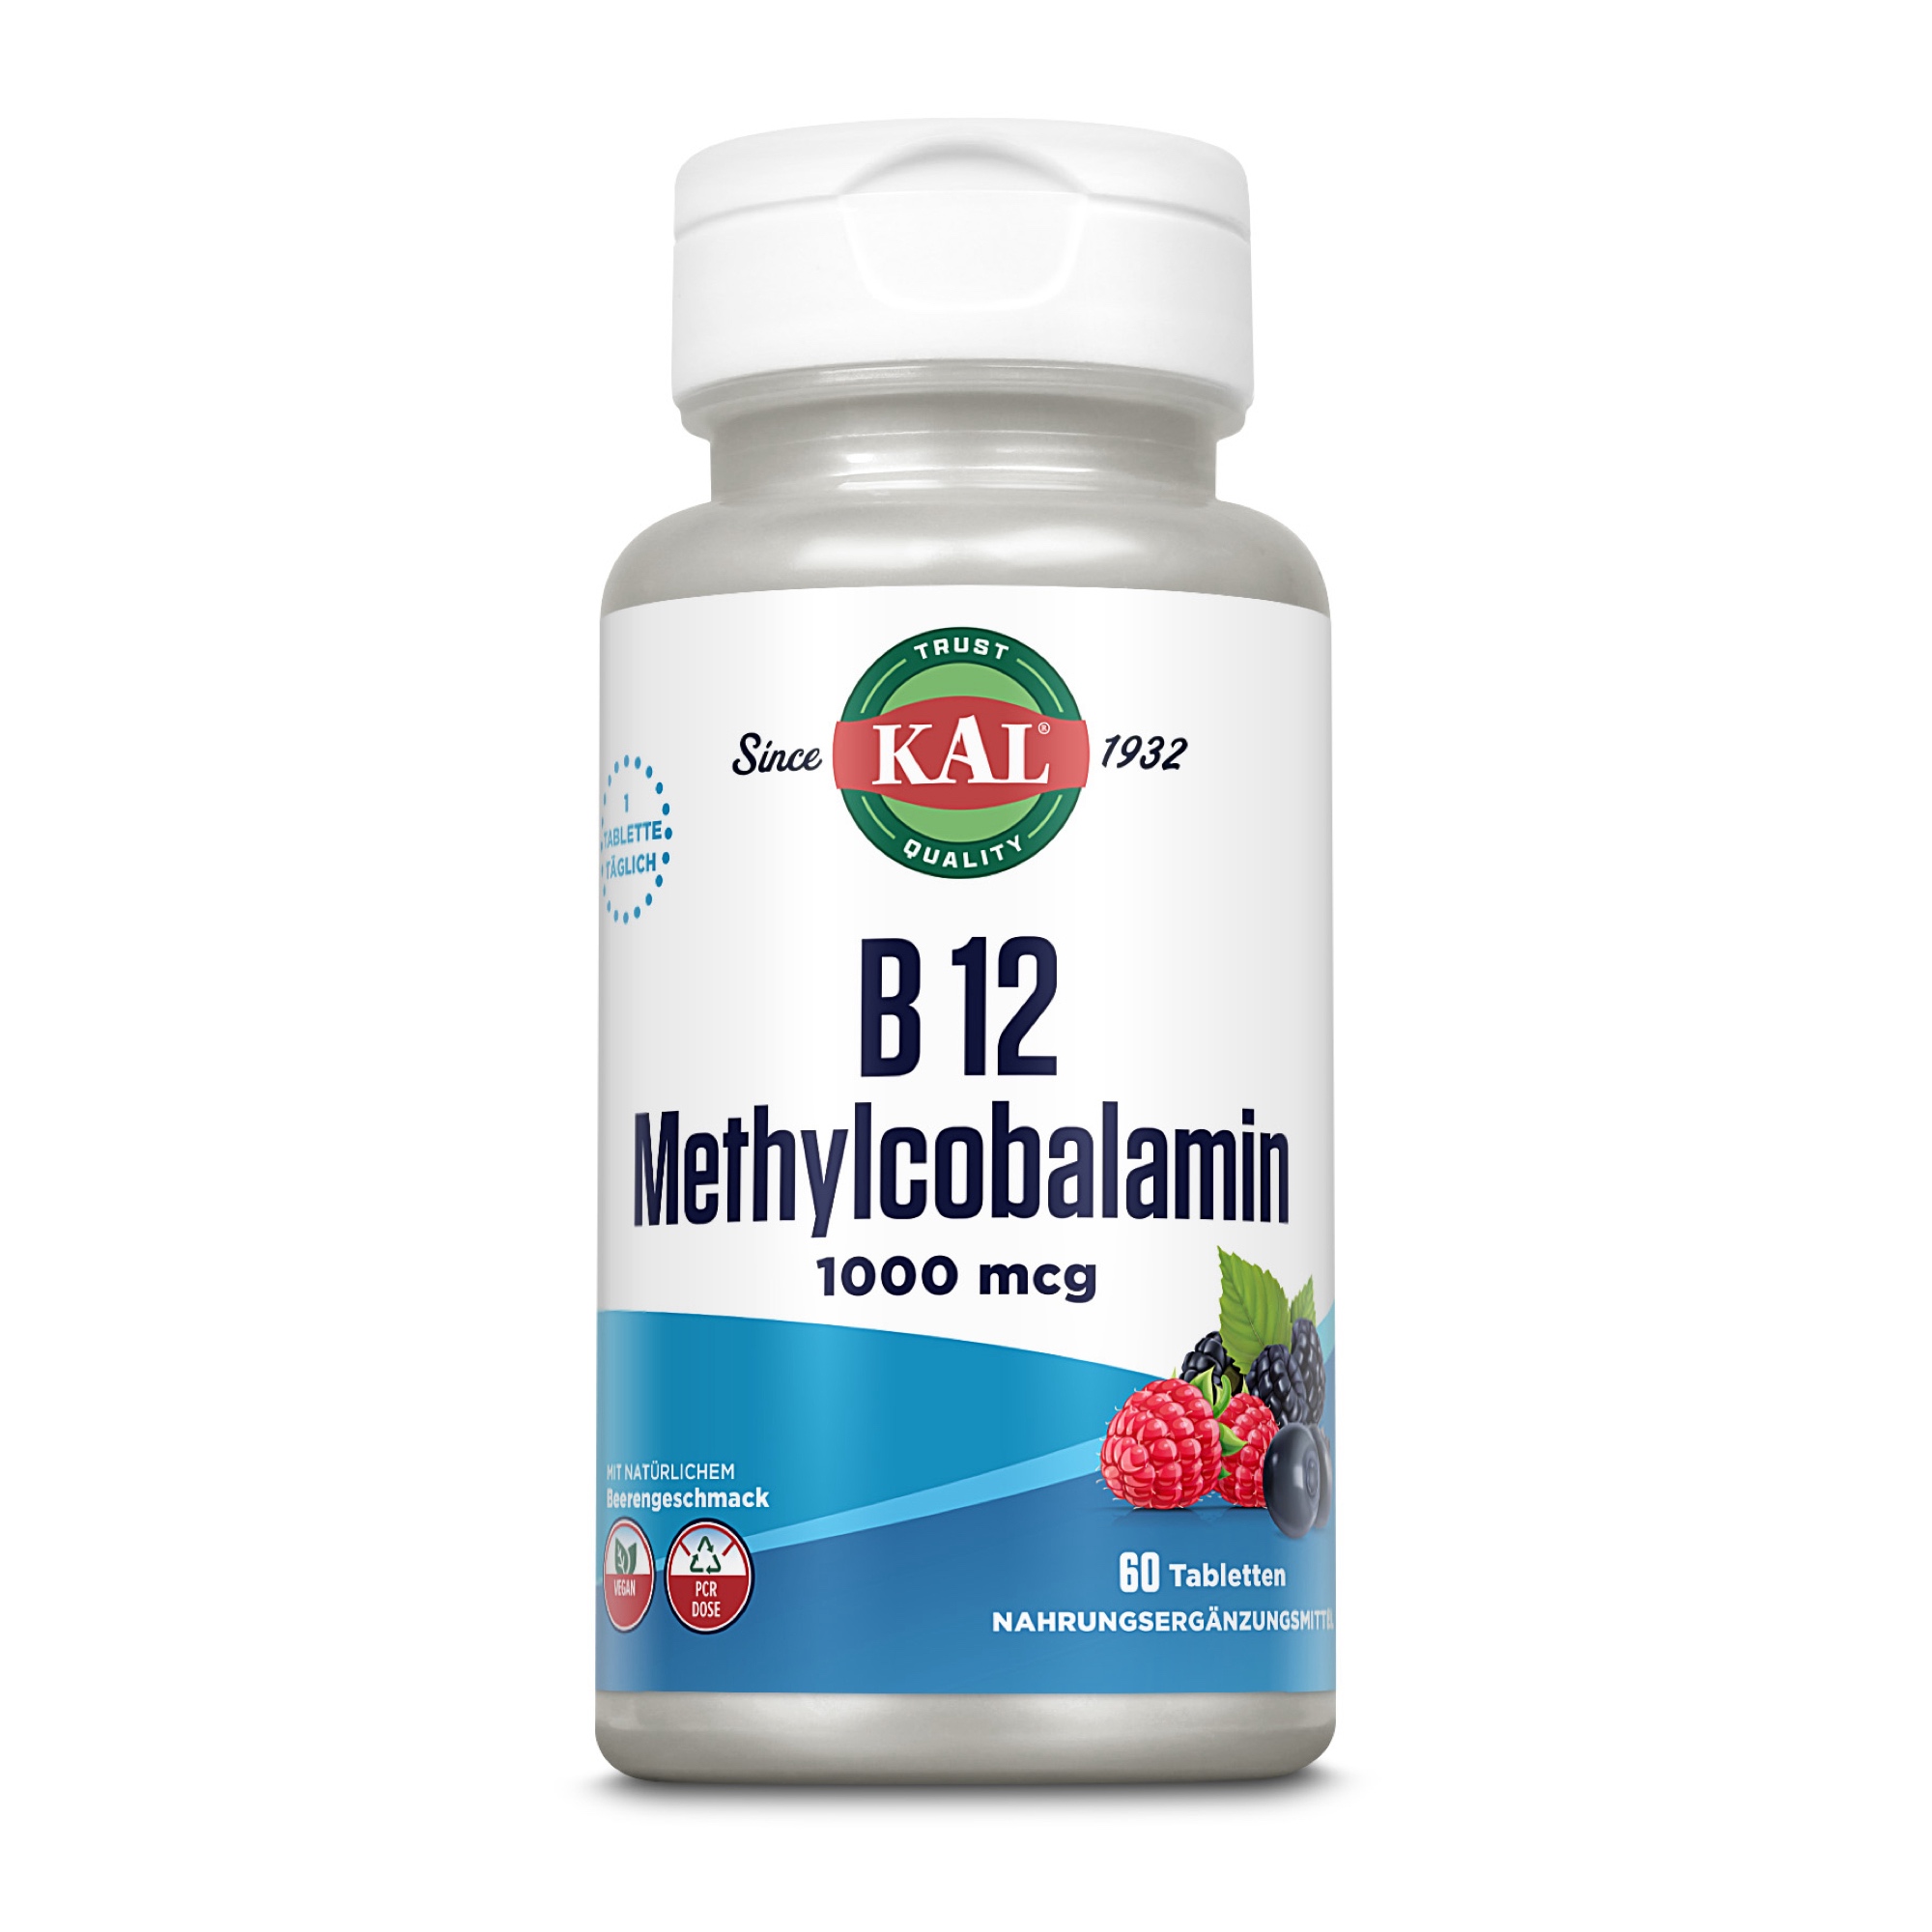 Methylcobalamin (B 12) 1000 mcg